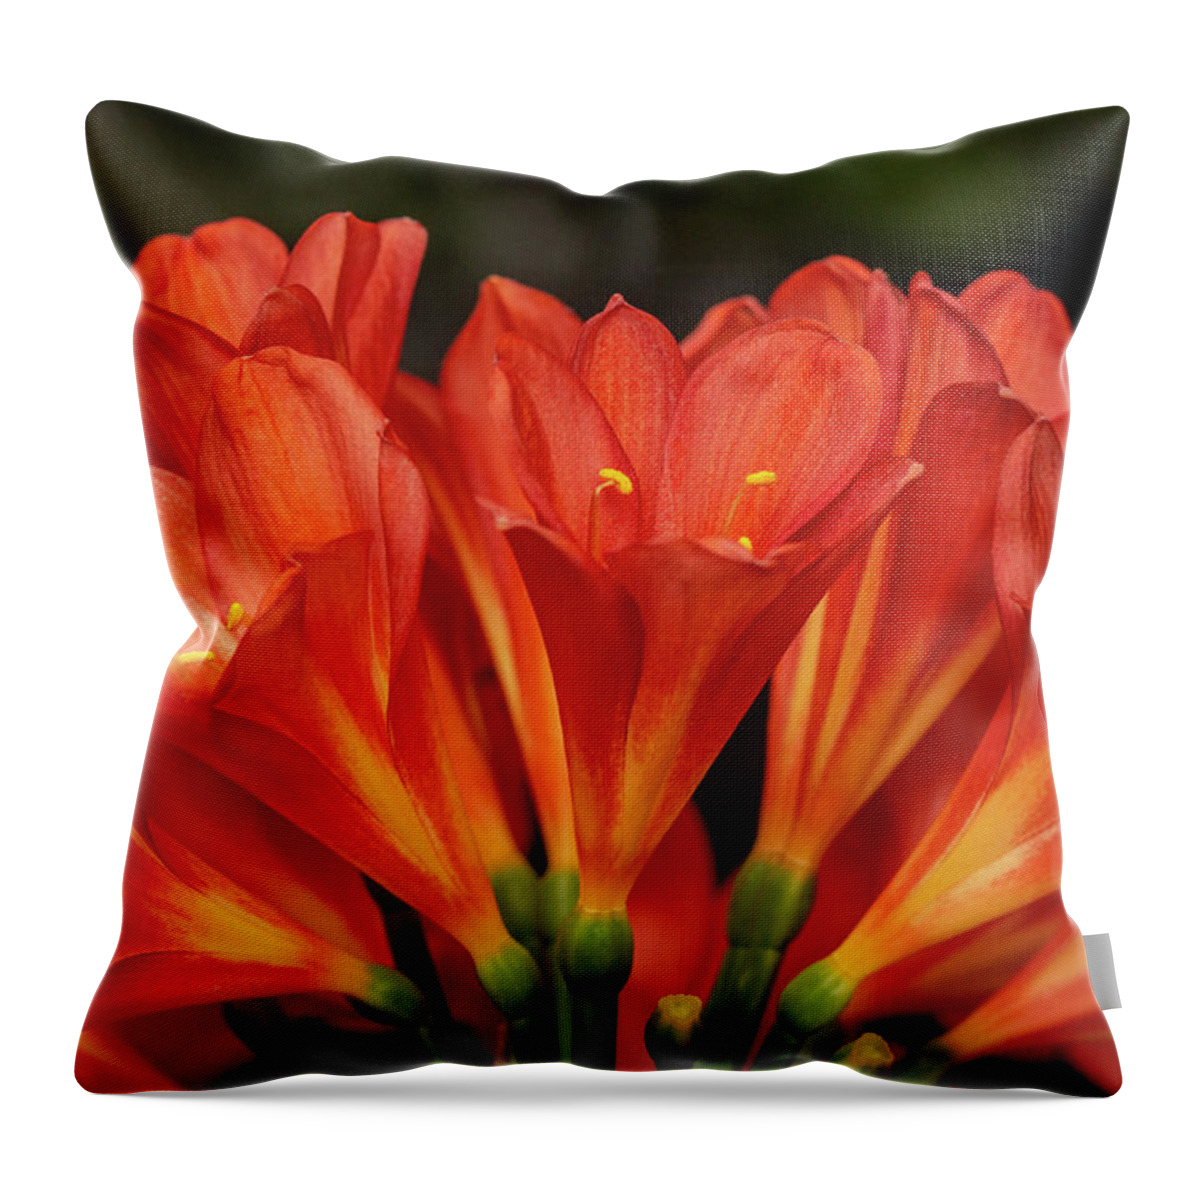 Kaffir Throw Pillow featuring the photograph Orange Delight - Kaffir Lily by Carol Senske